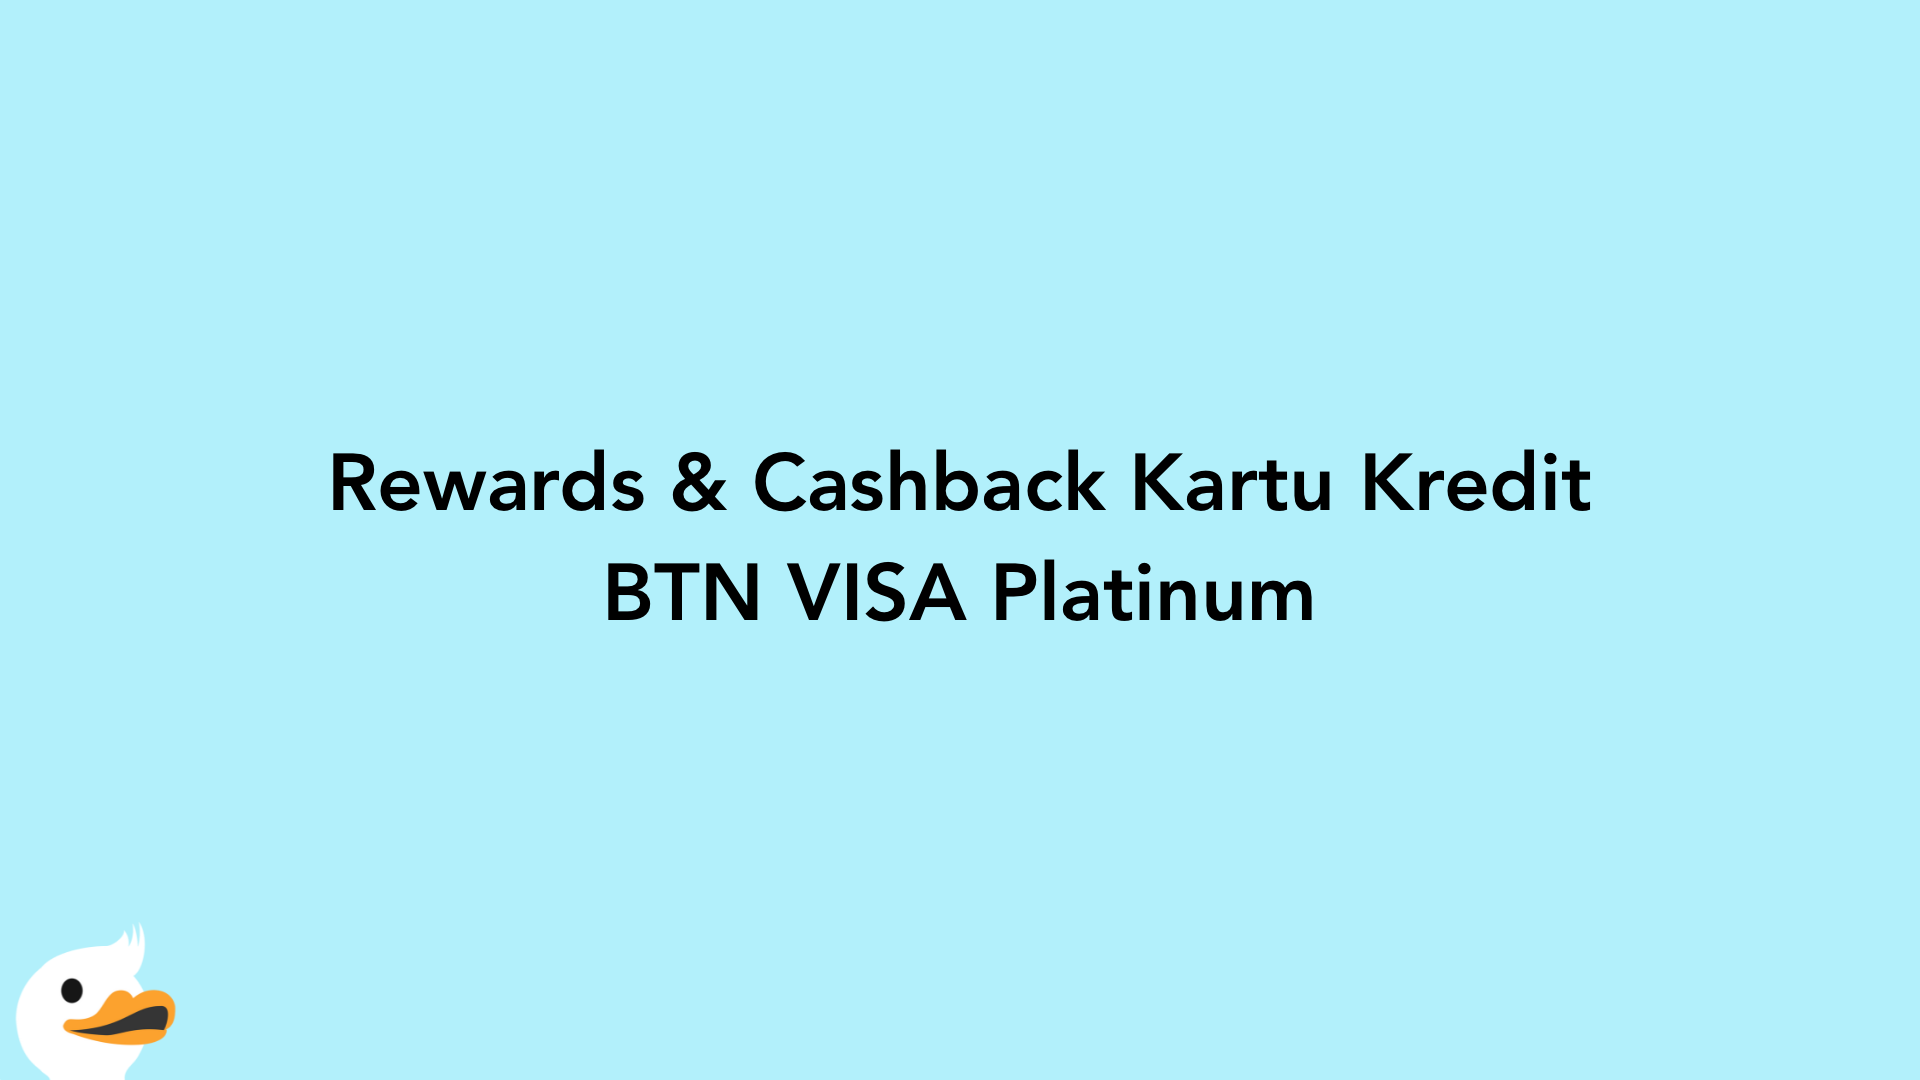 Rewards & Cashback Kartu Kredit BTN VISA Platinum